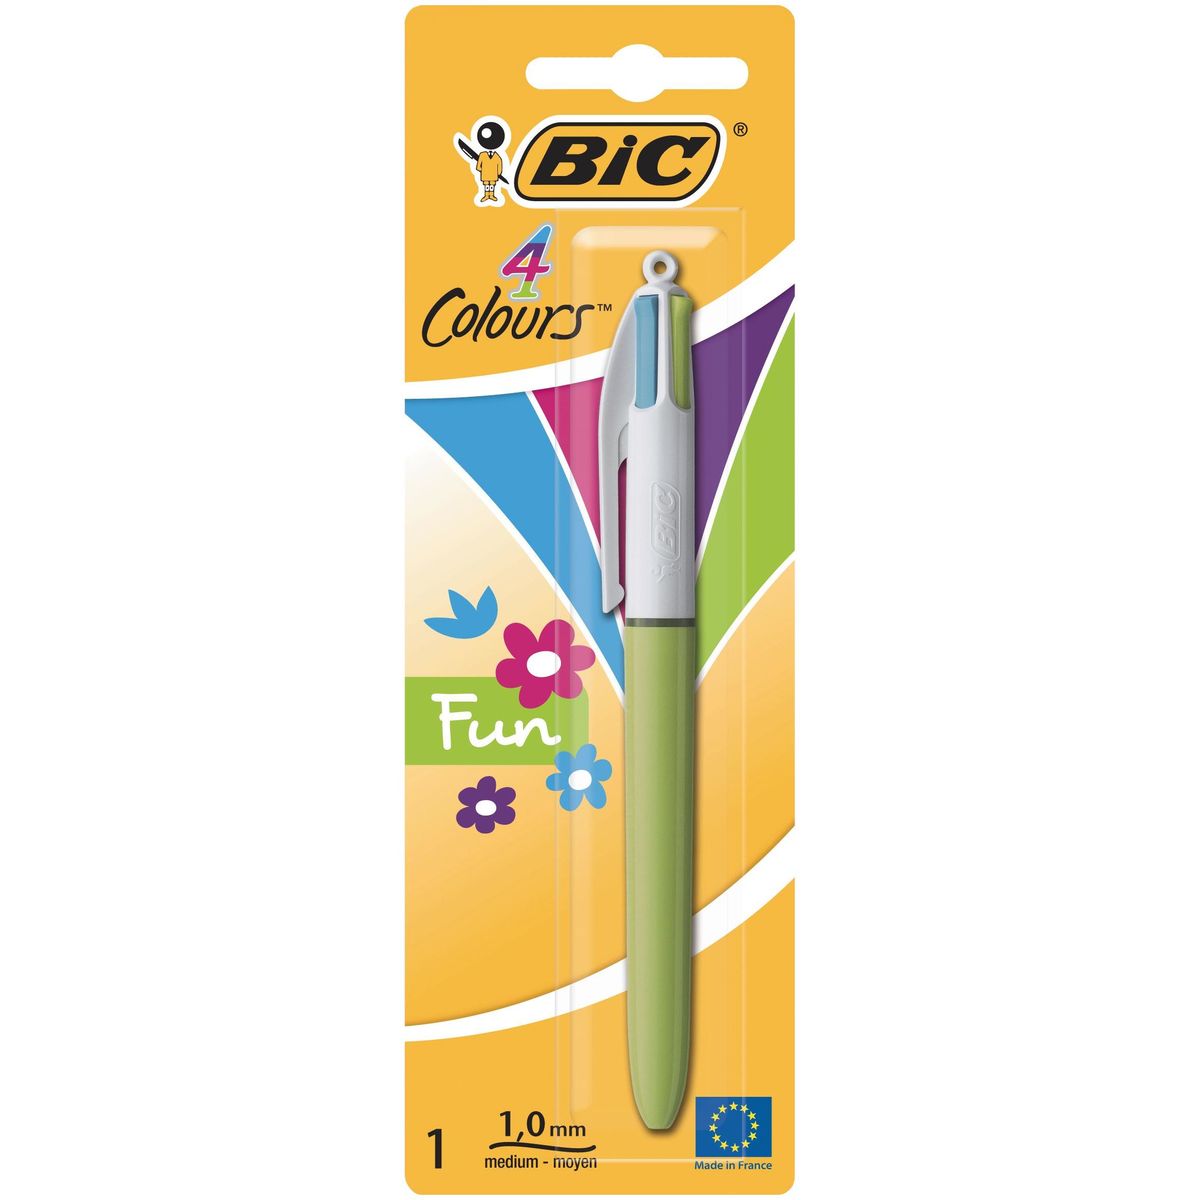 Bic 4 Colours stylo-bille rétractable Fun